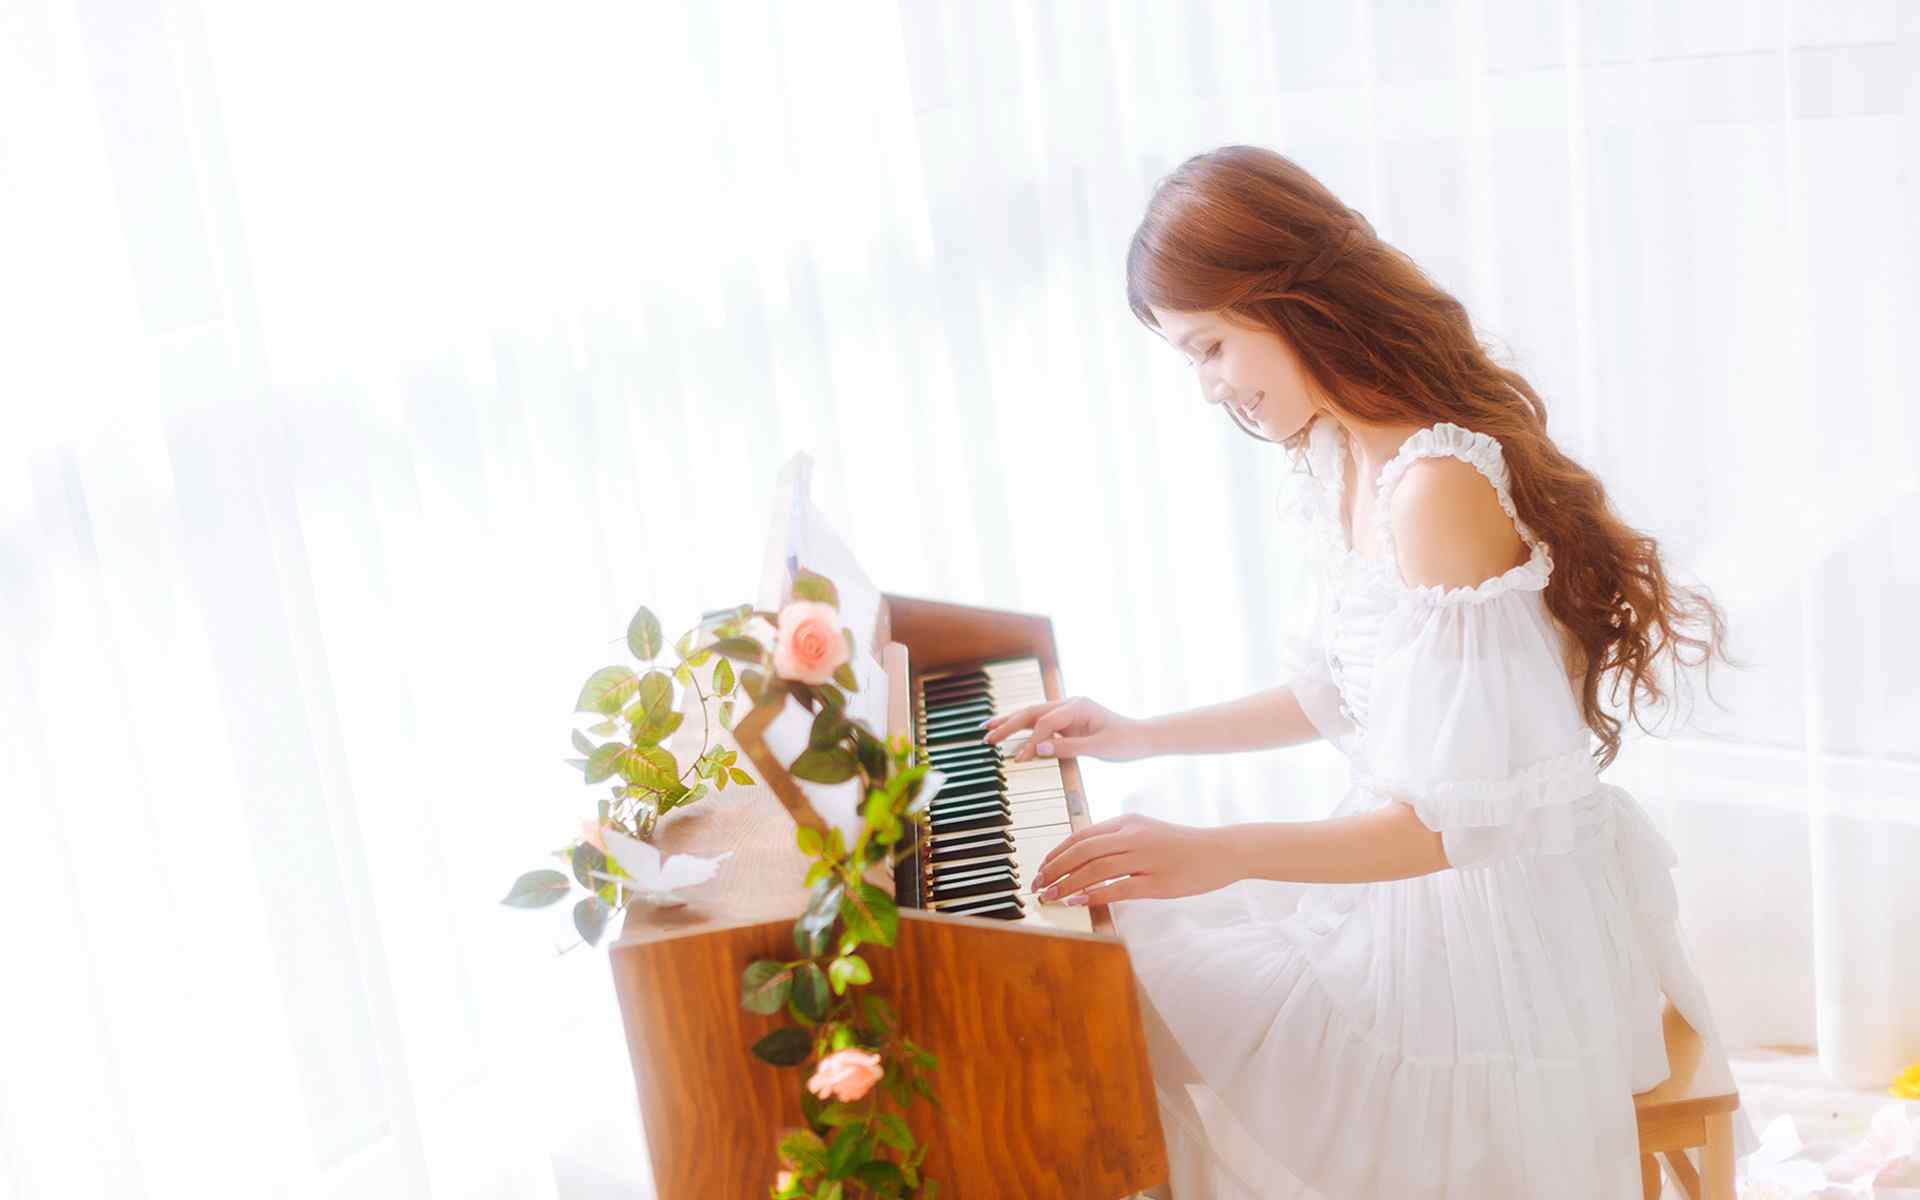 弹钢琴的美女桌面壁纸(4) - 25H.NET壁纸库